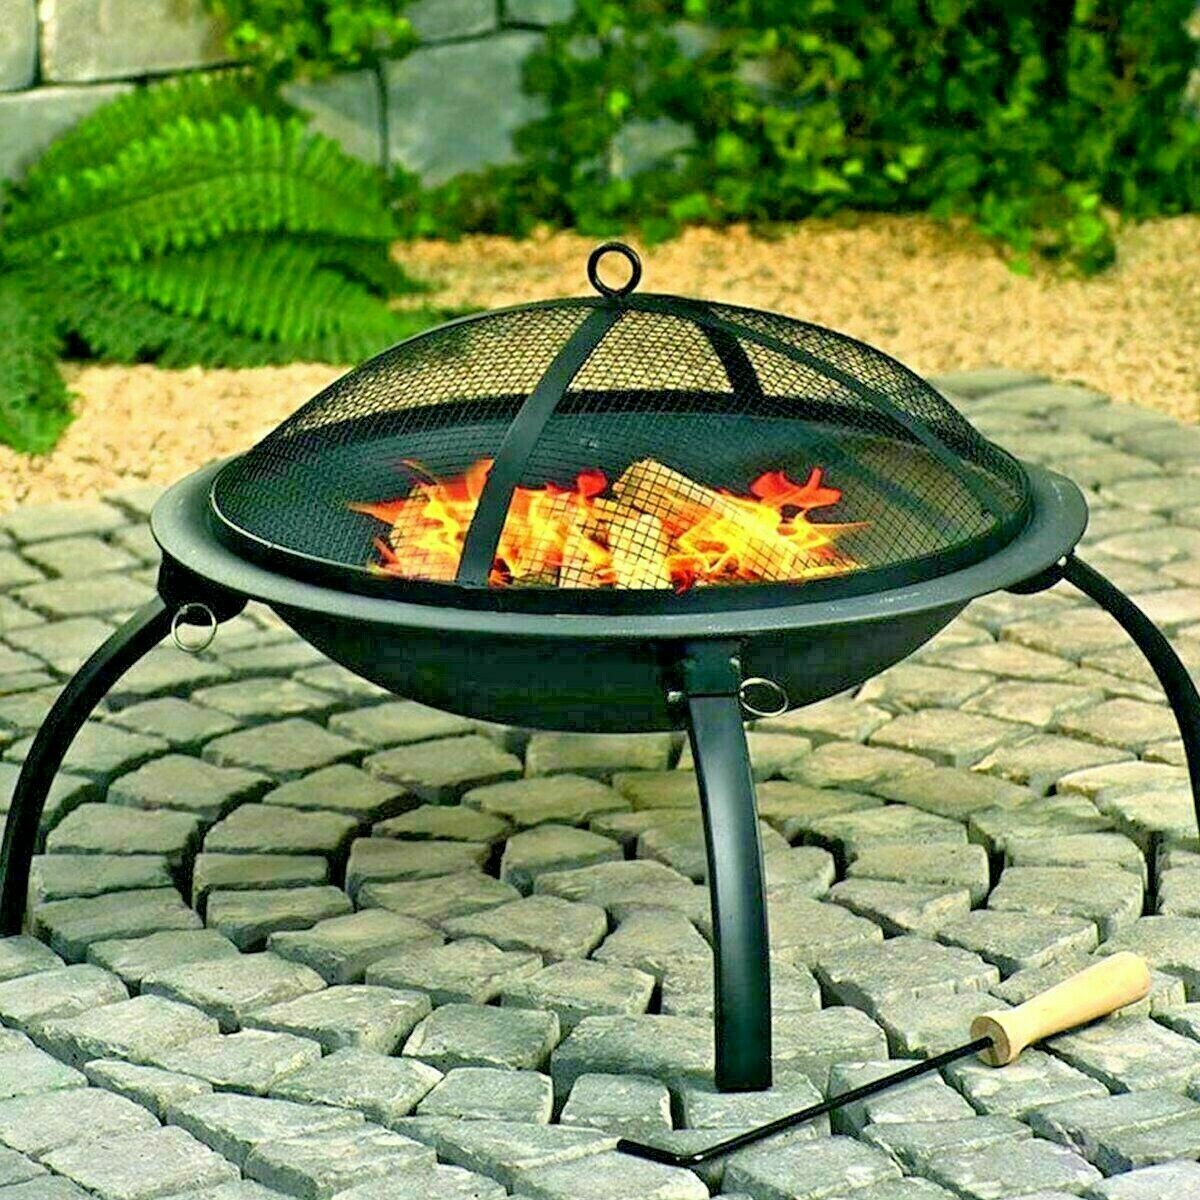 GardenKraft 22" Portable Outdoor Garden Firepit Grill BBQ Summer Party Warm fire